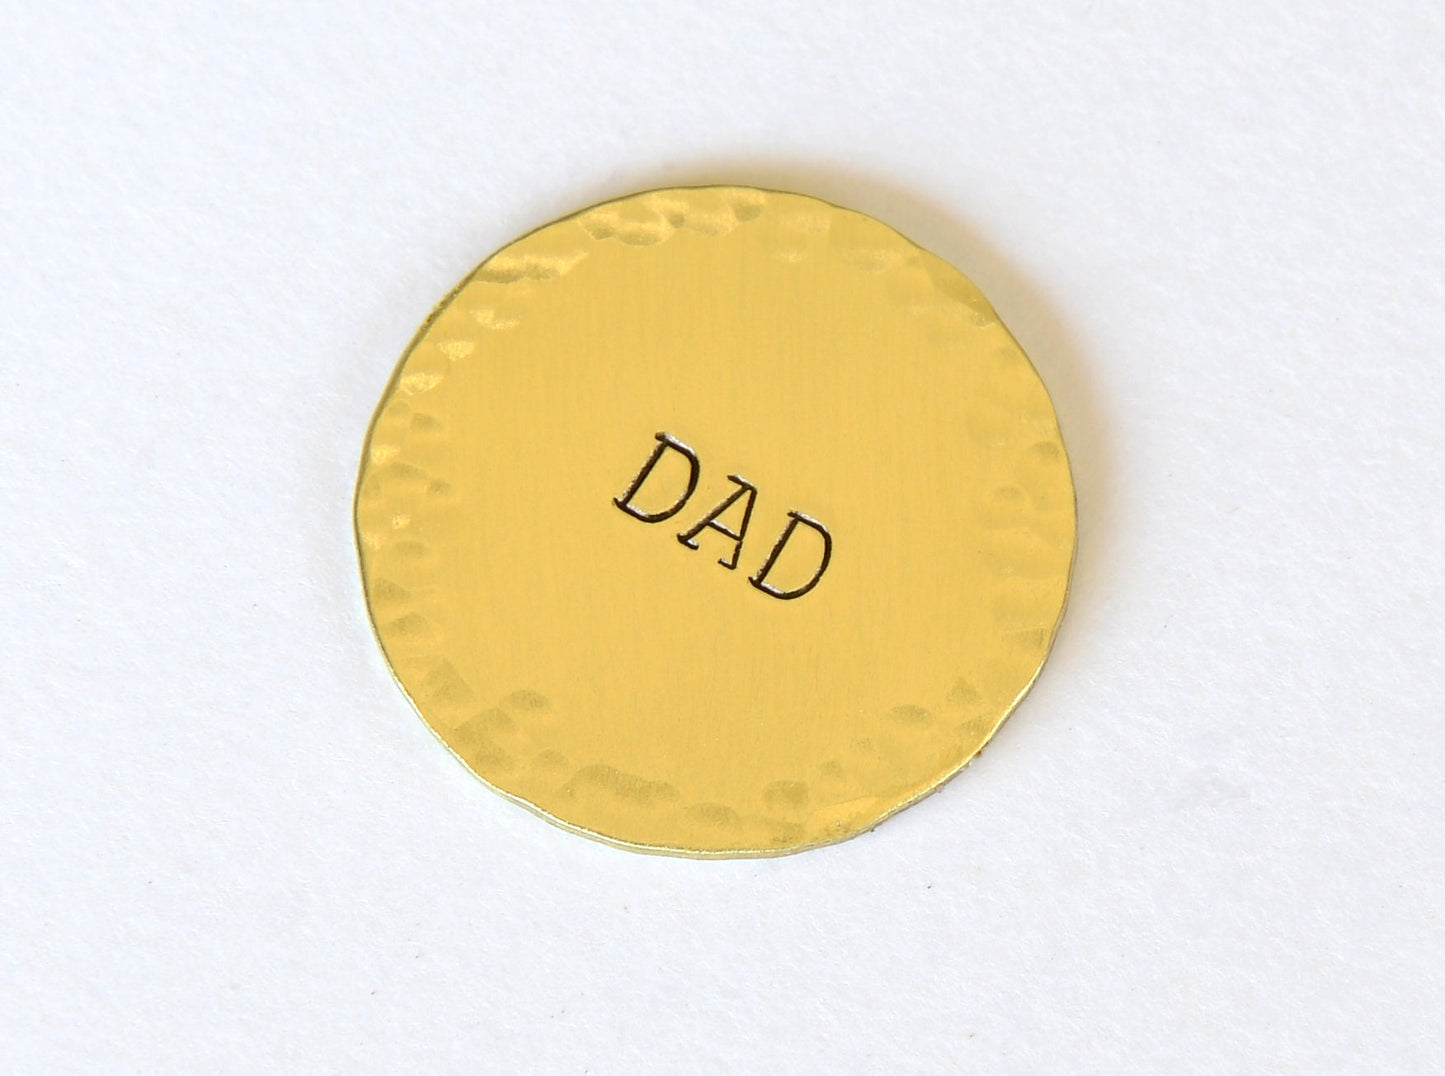 Dad themed Brass Golf Ball Marker